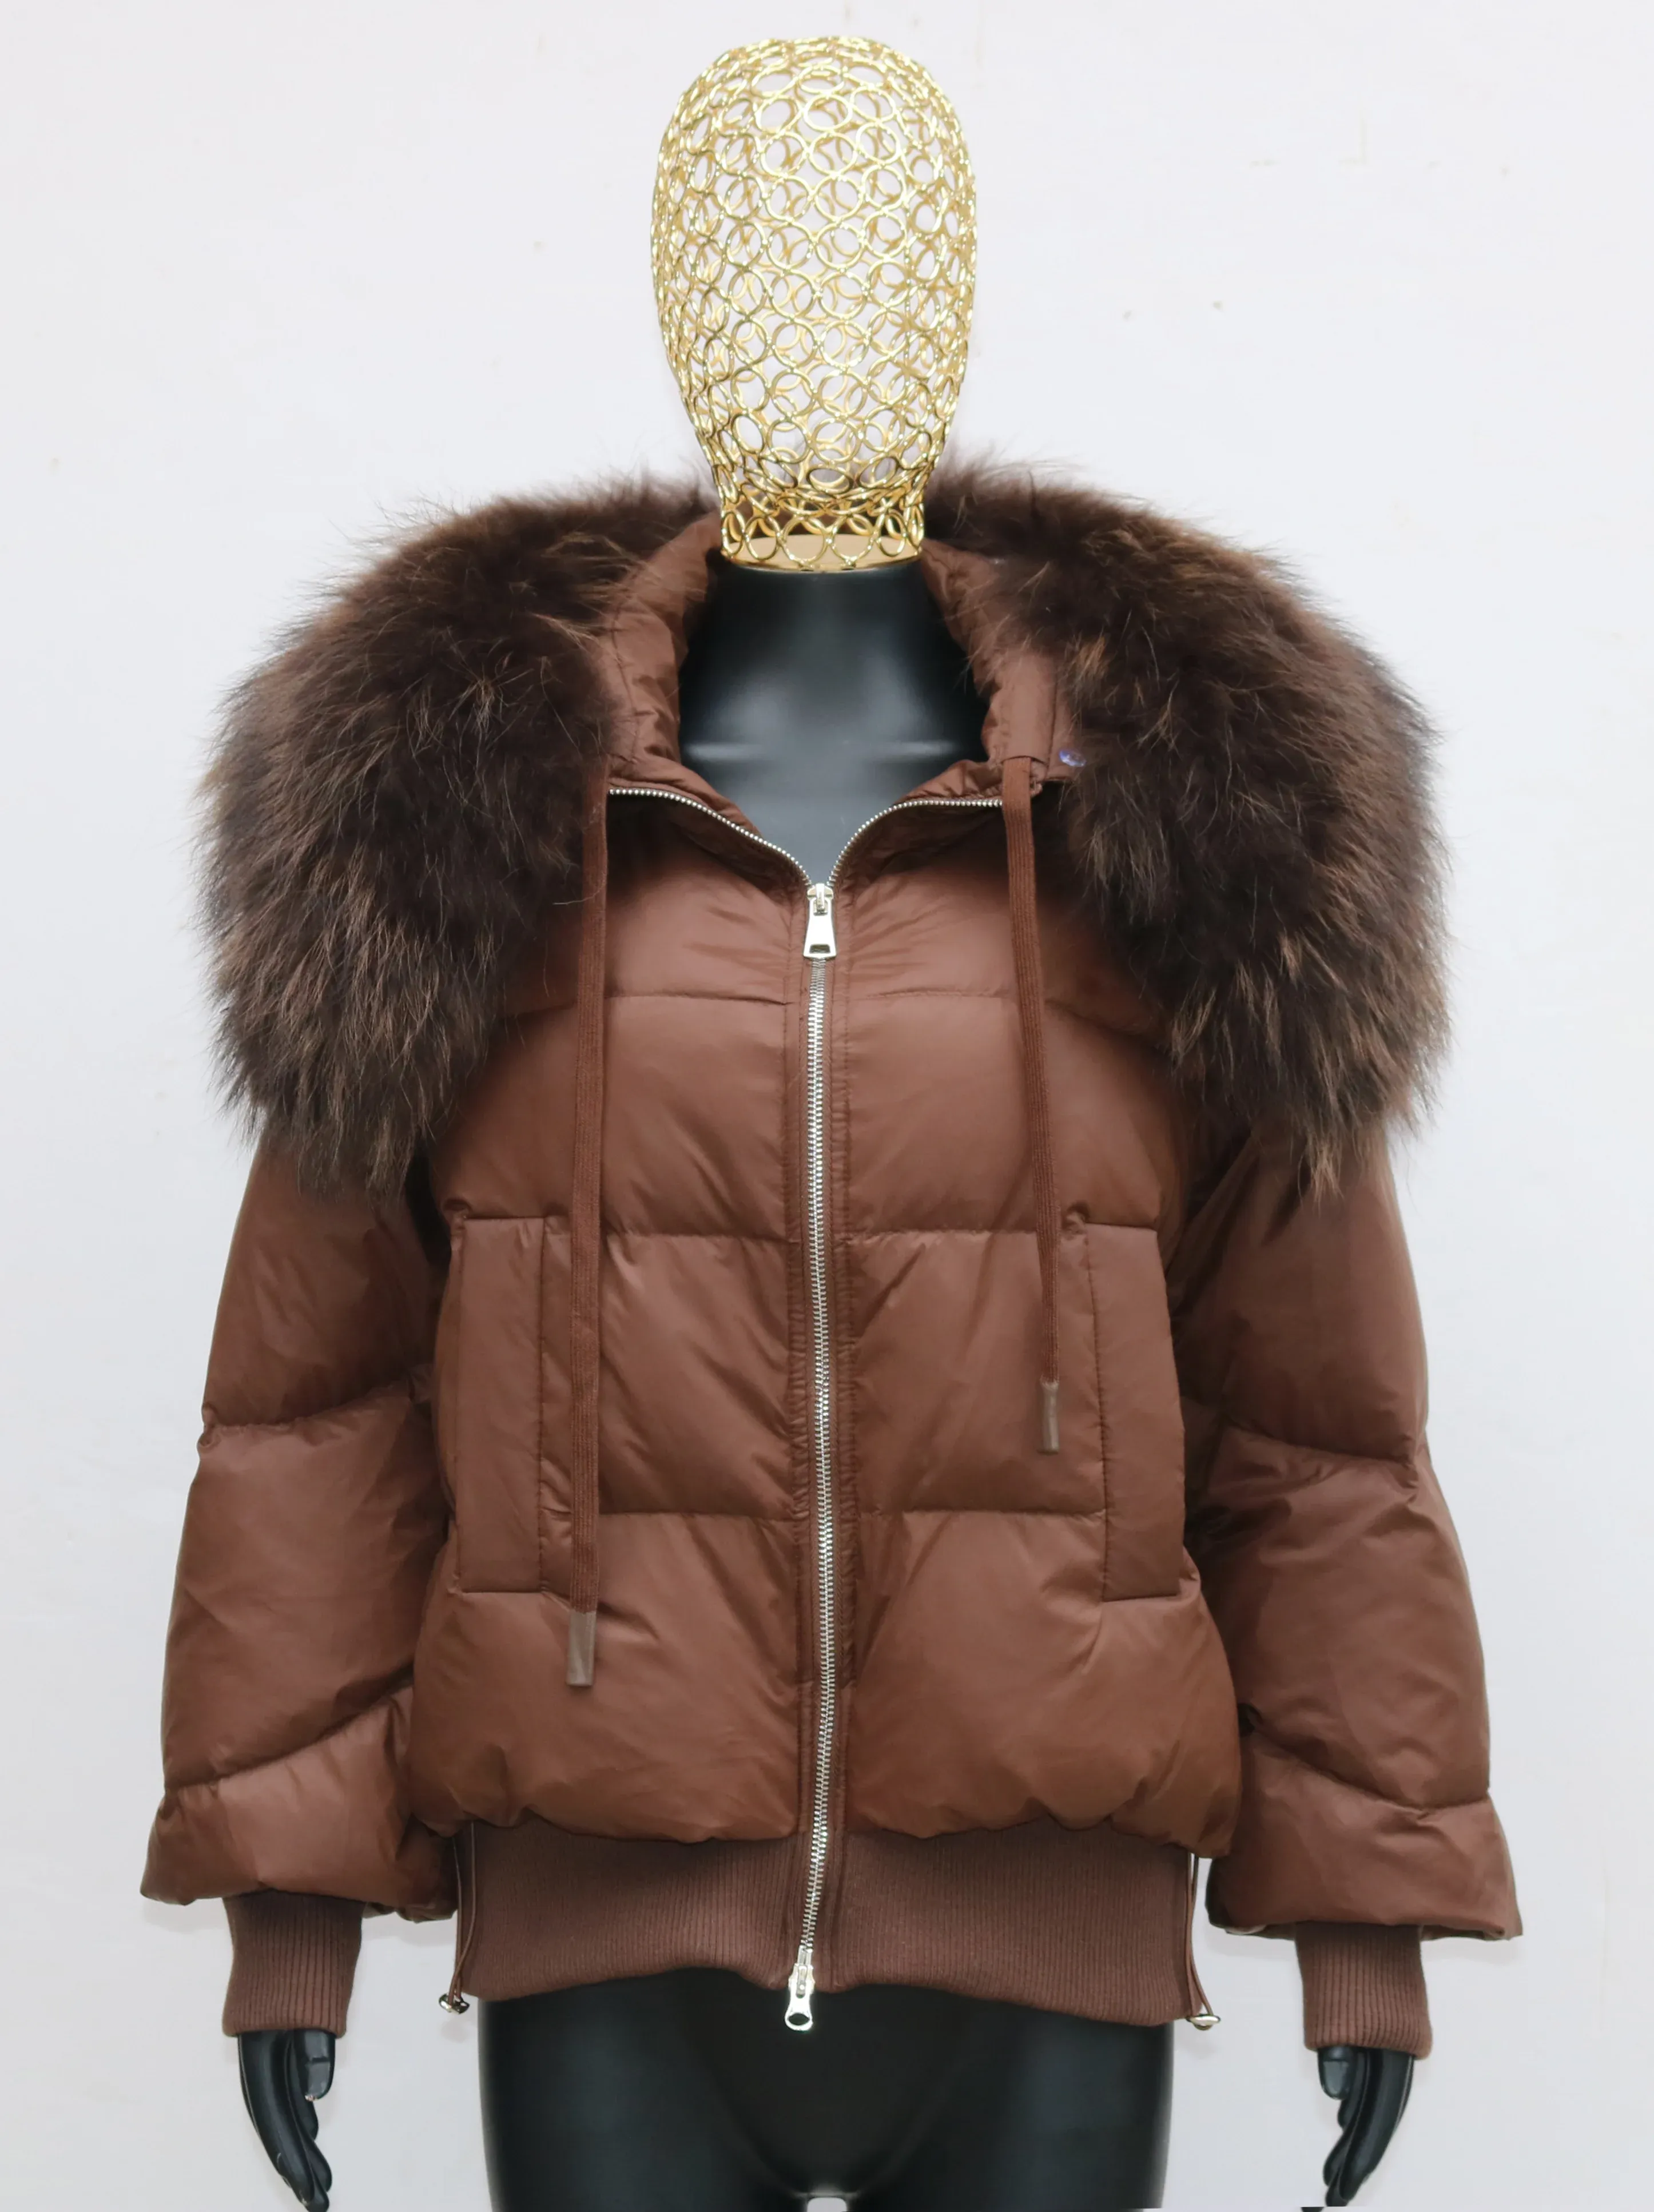 모피 털이 새로운 패션 겨울 여자 따뜻한 느슨한 코트 천연 진짜 여우 모피 칼라 흰색 오리 다운 재킷 두꺼운 고급 옥외 우화